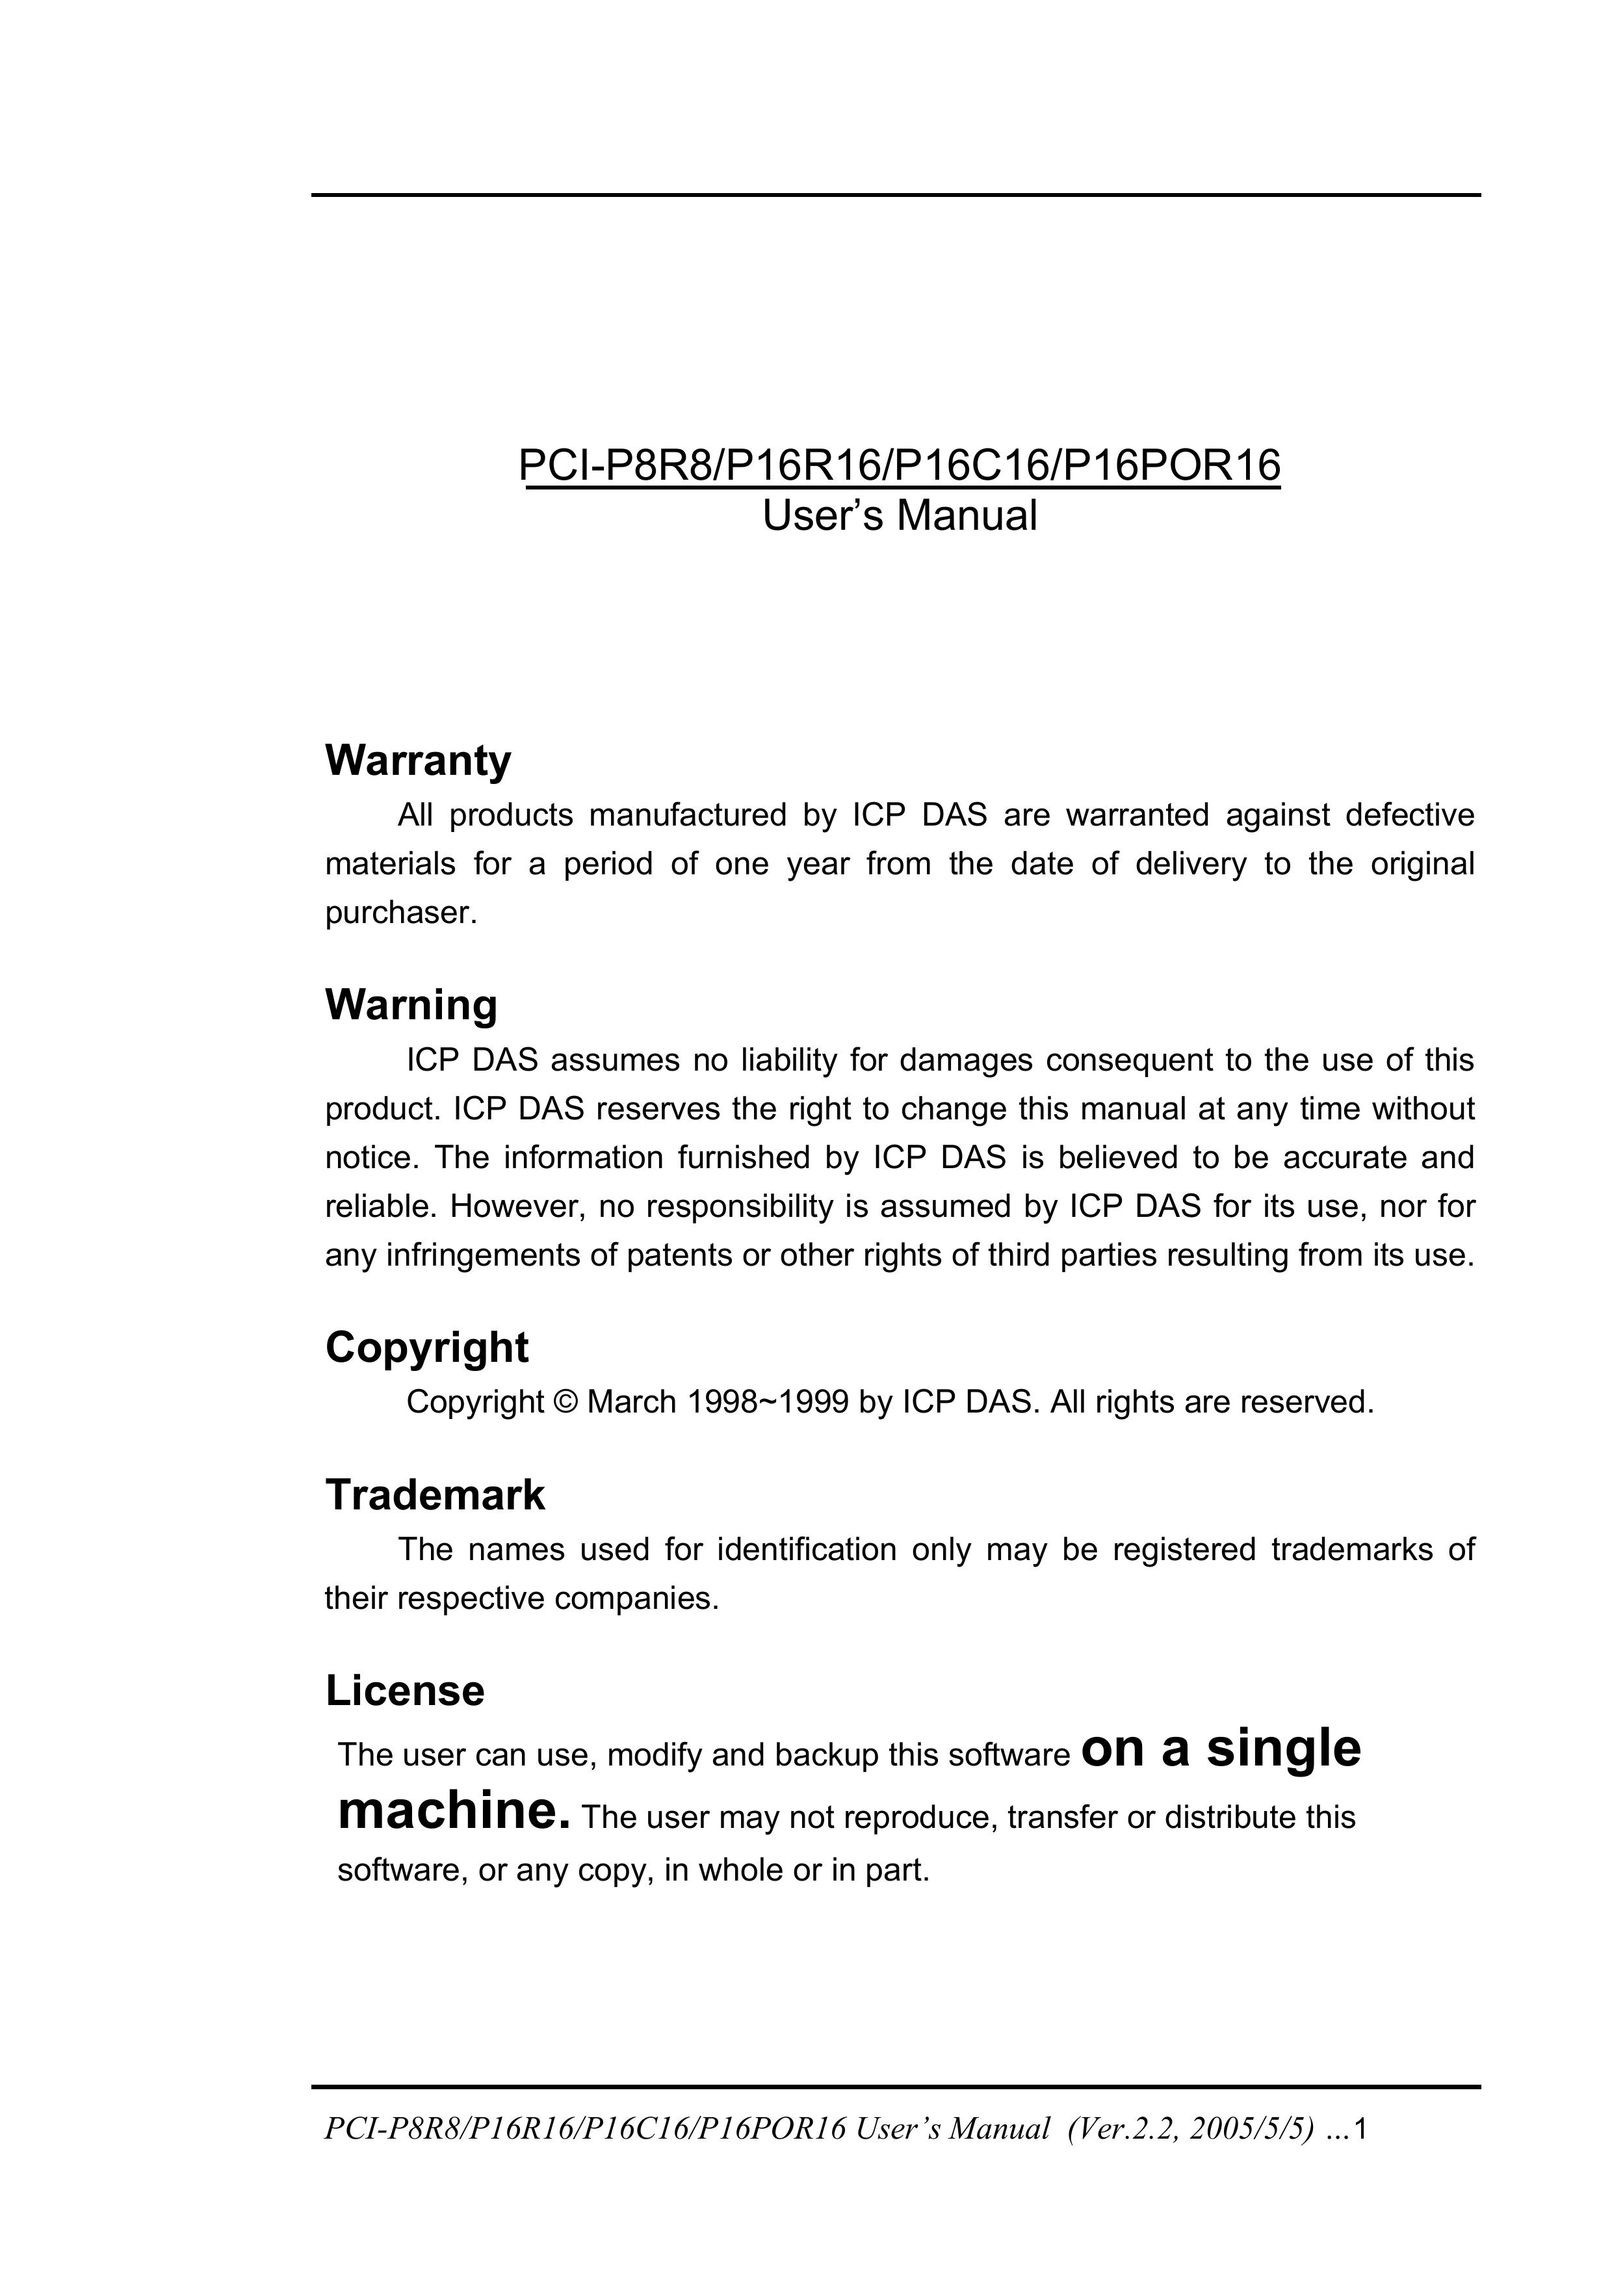 ICP DAS USA PCI-P16POR16 Computer Hardware User Manual